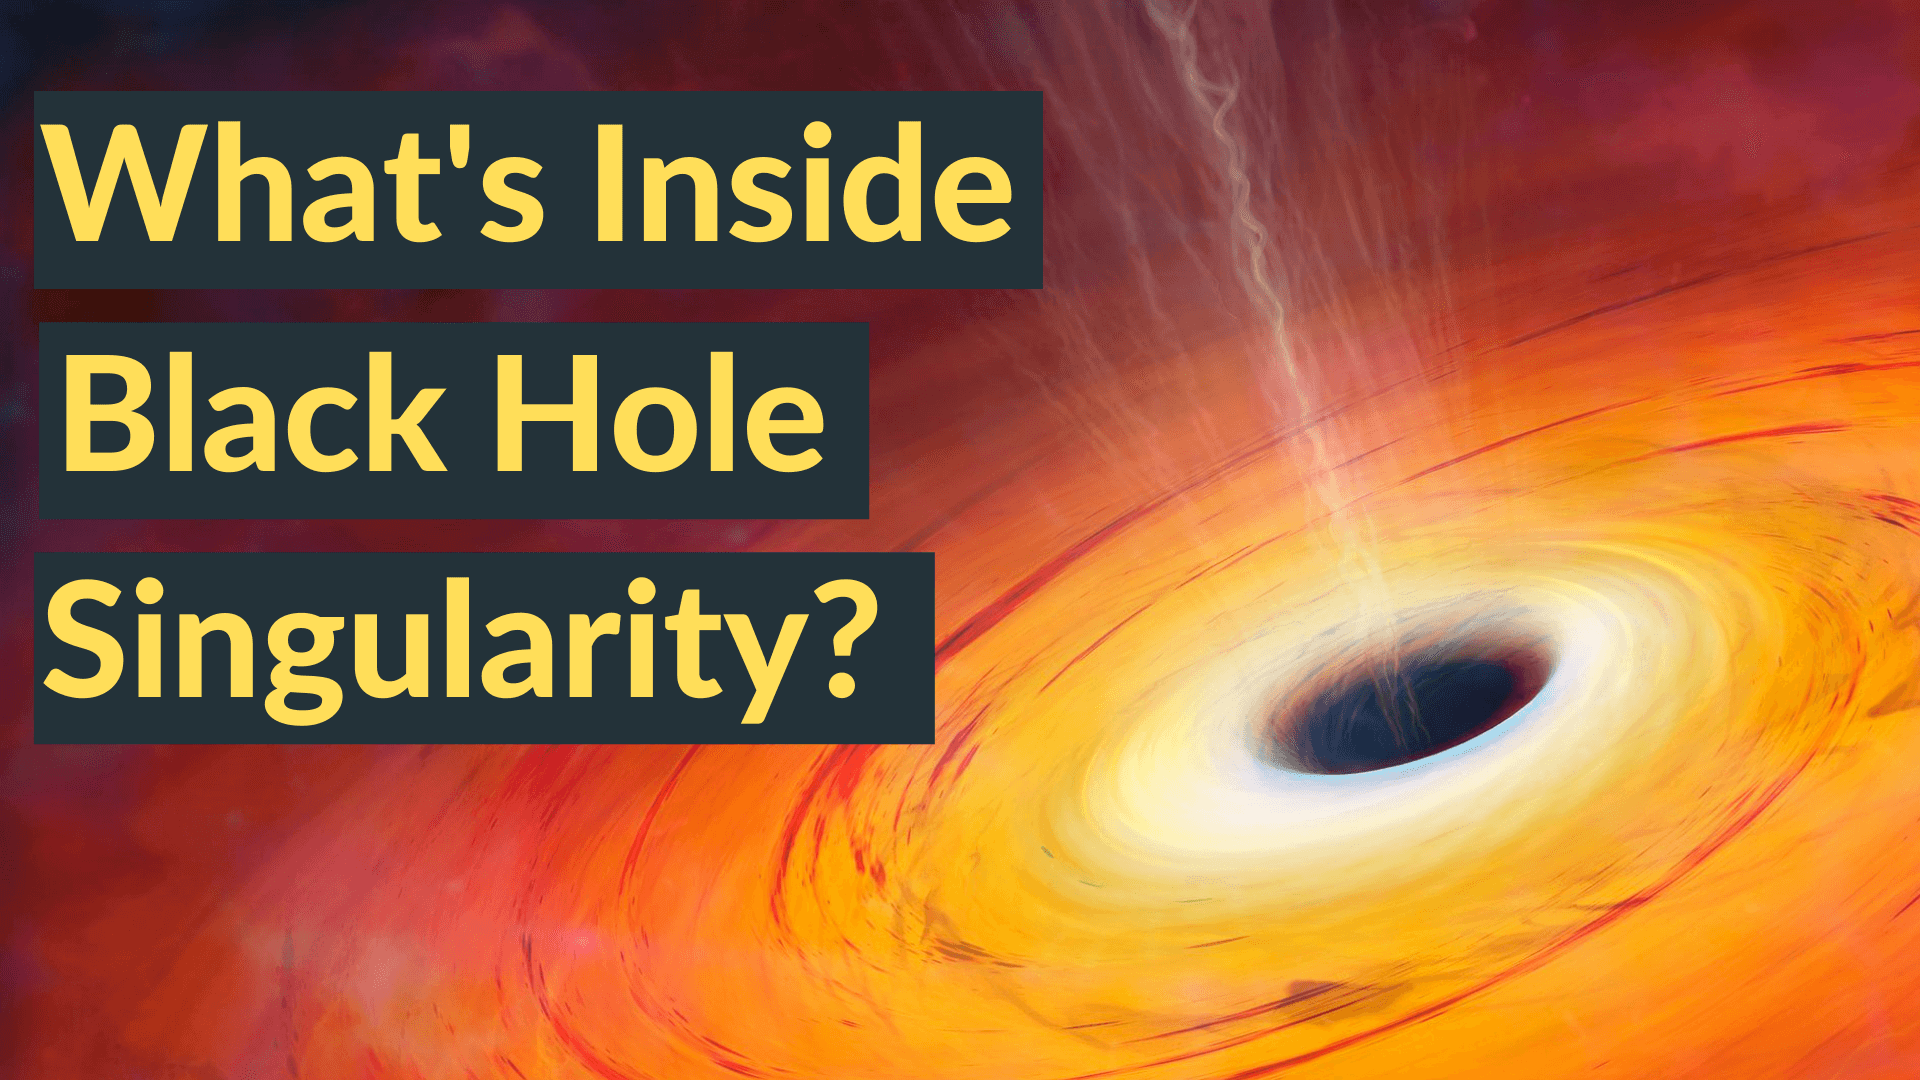 Inside a Black Hole